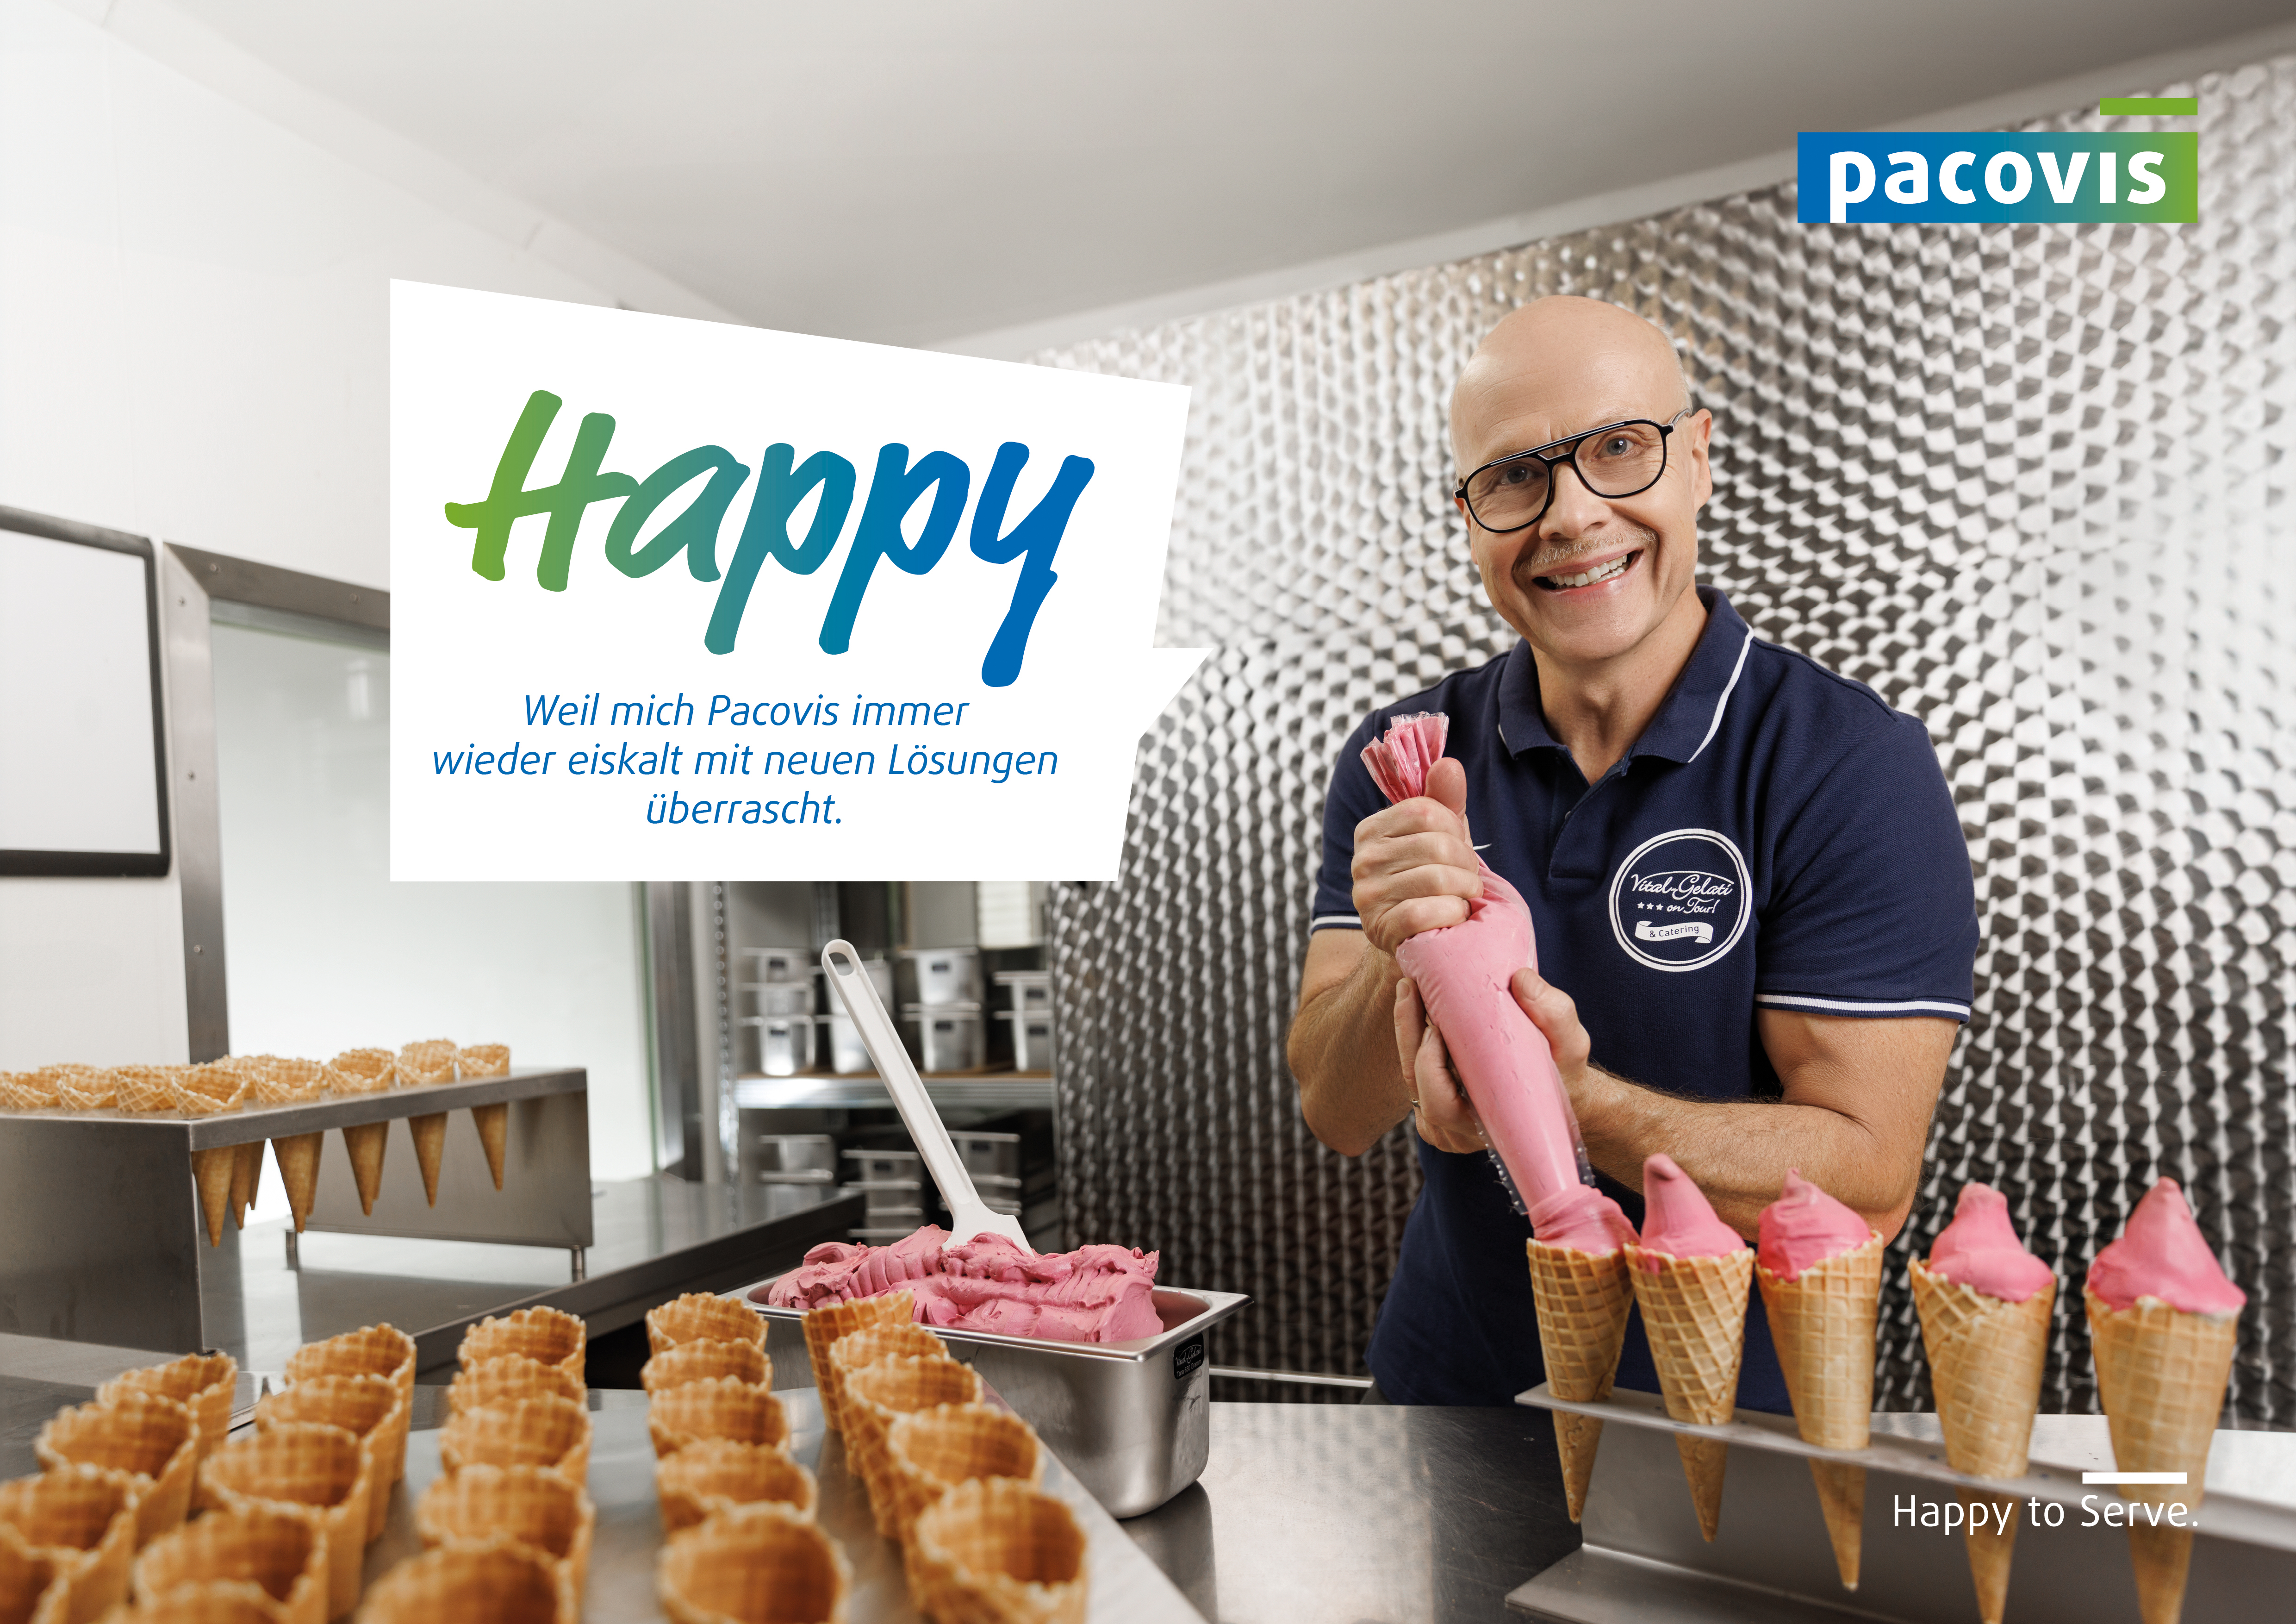 Bild aus der Pacovis-Imagekampagne mit glücklichem Gelatieri und Text "Happy, weil mich Pacovis immer wieder eiskalt mit neuen Lösungen überrascht."